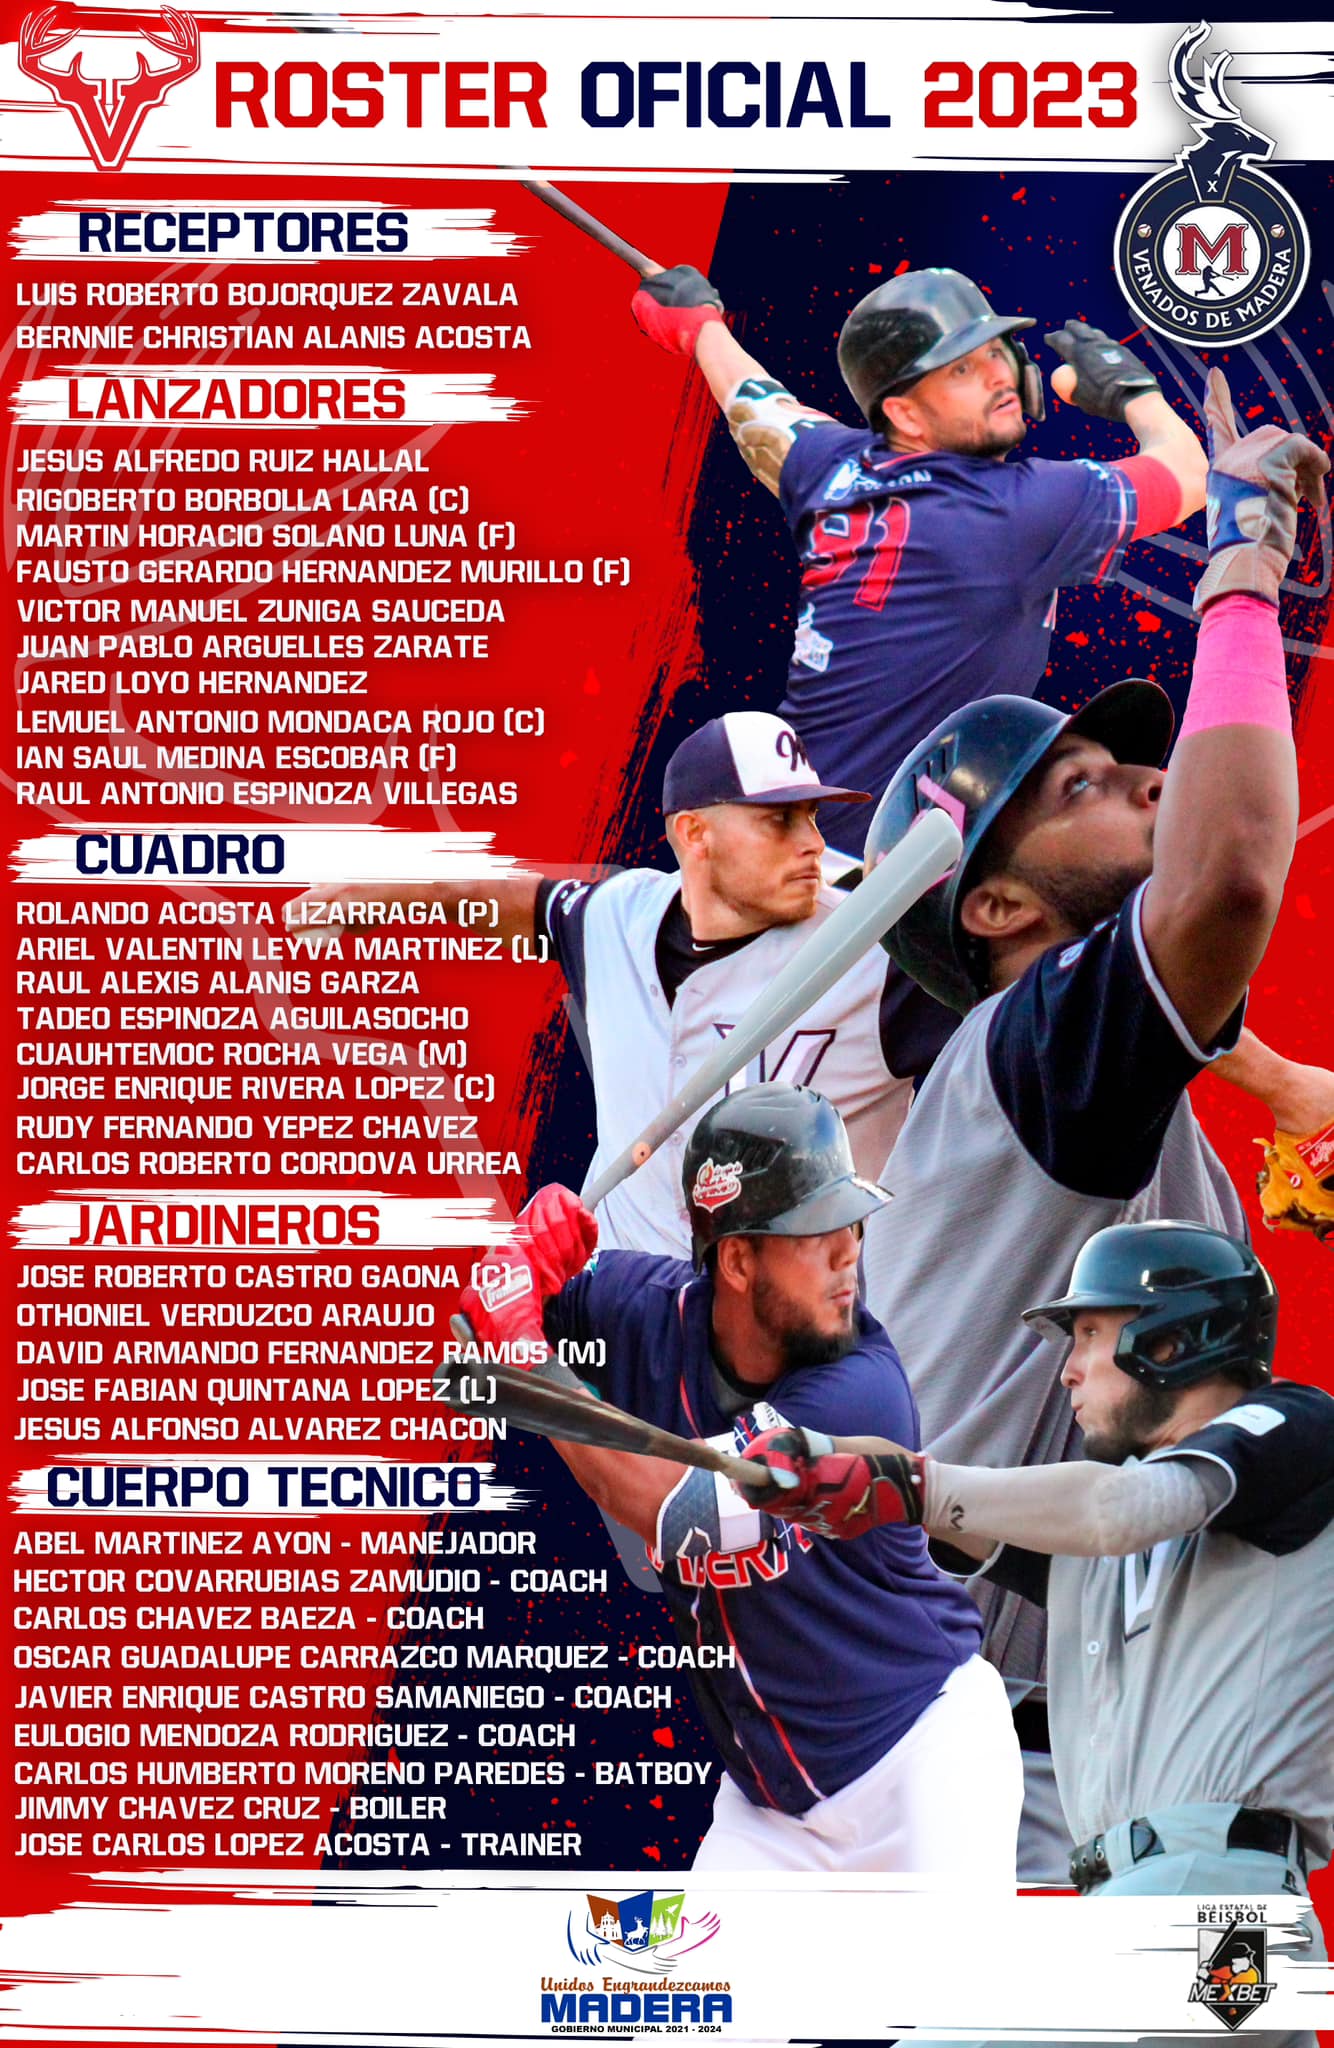 venados-madera-roster-beisbol-chihuahua-temporada-2023